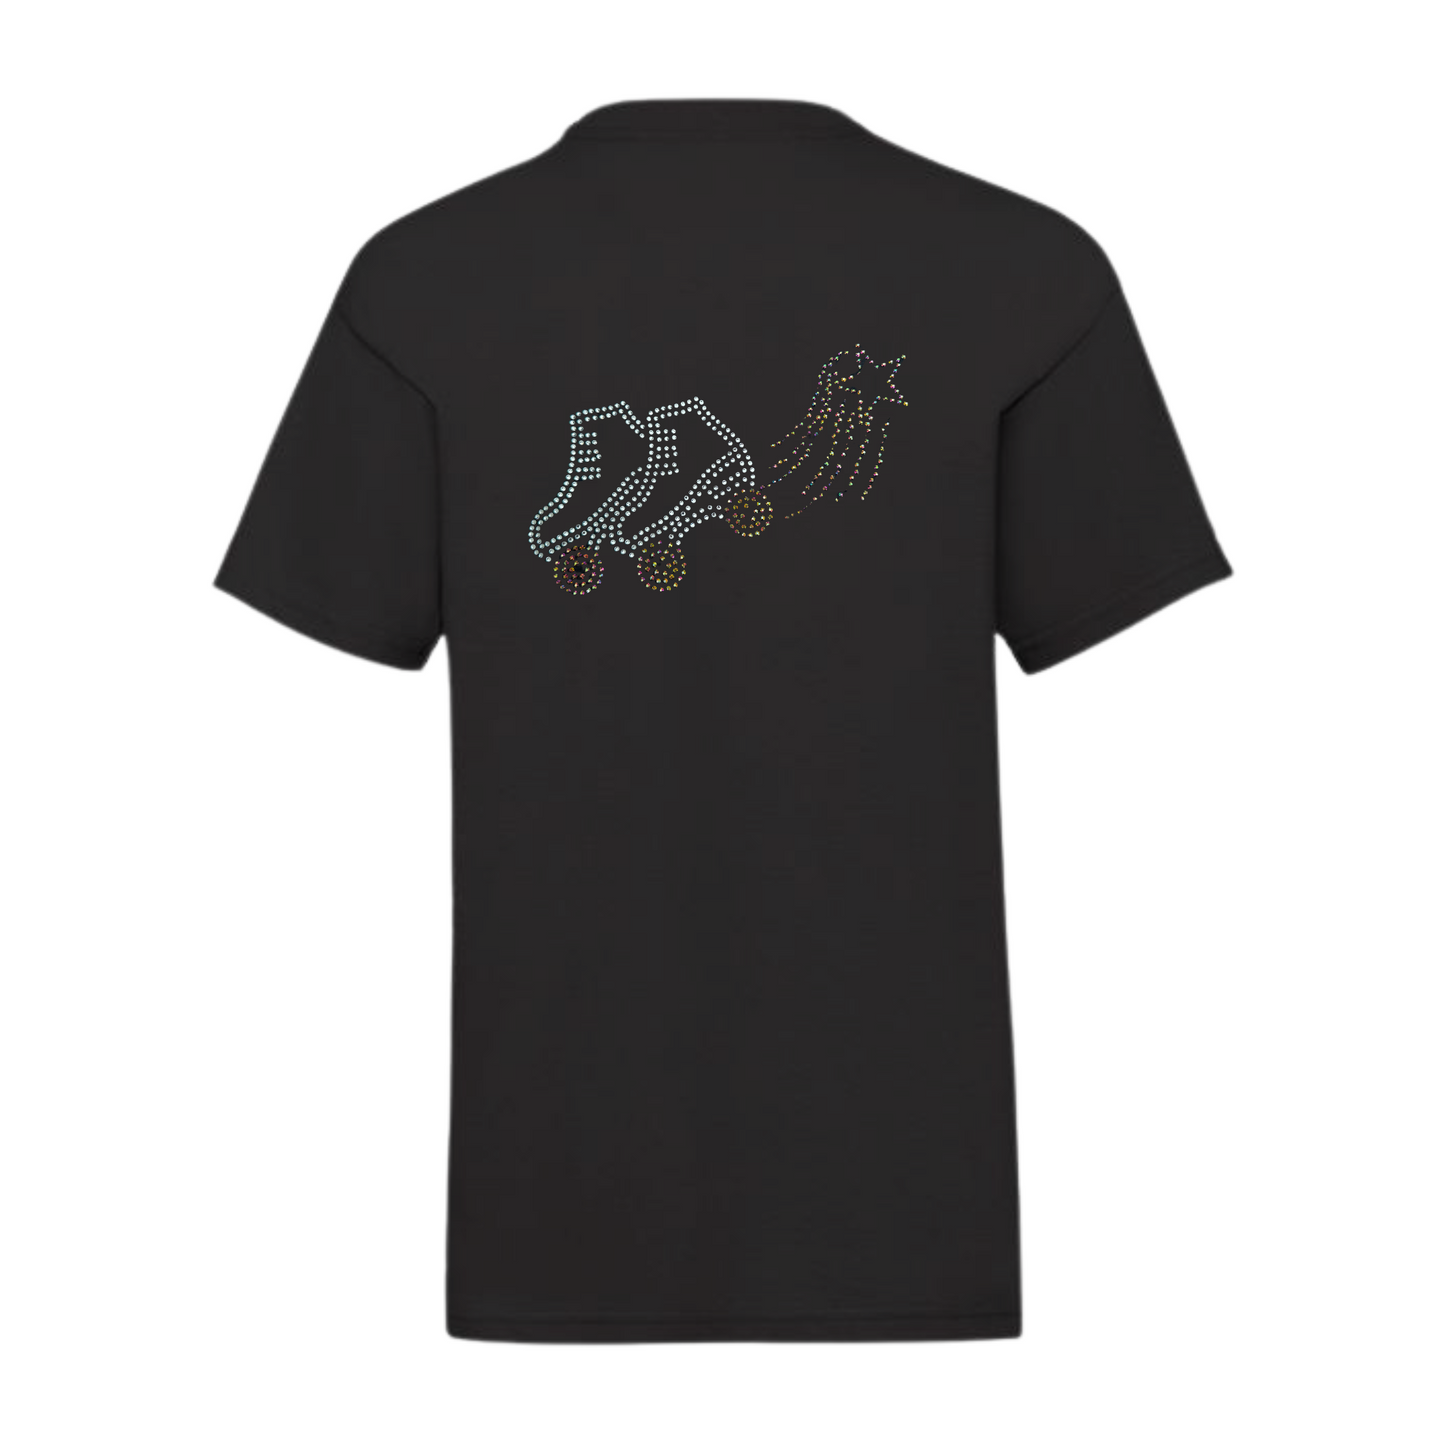 Starlight Express roller skate back detail T-shirt Children's